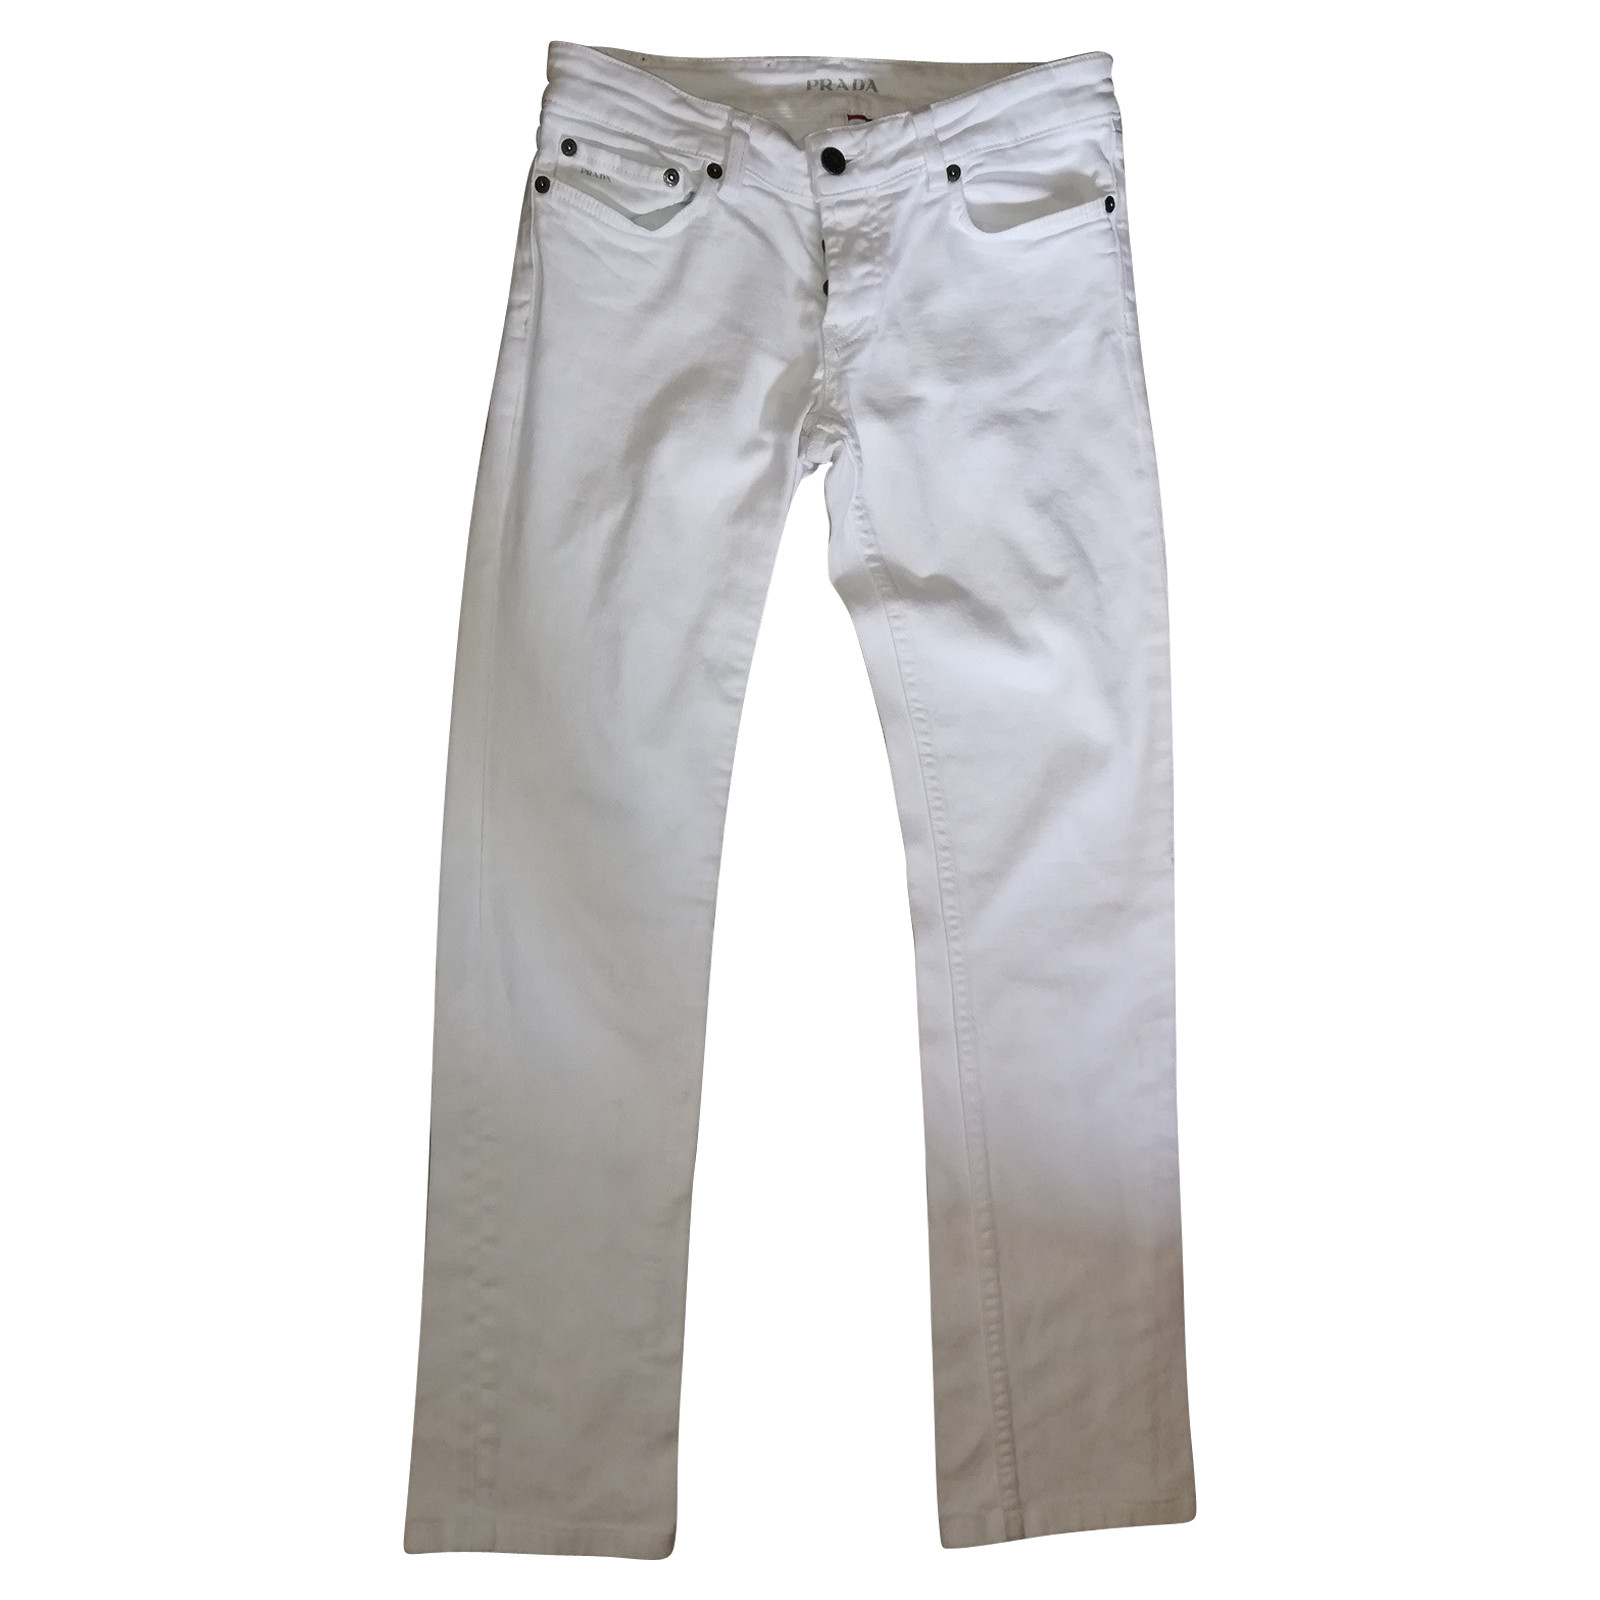 PRADA Women's Jeans aus Baumwolle in Weiß Size: W 27